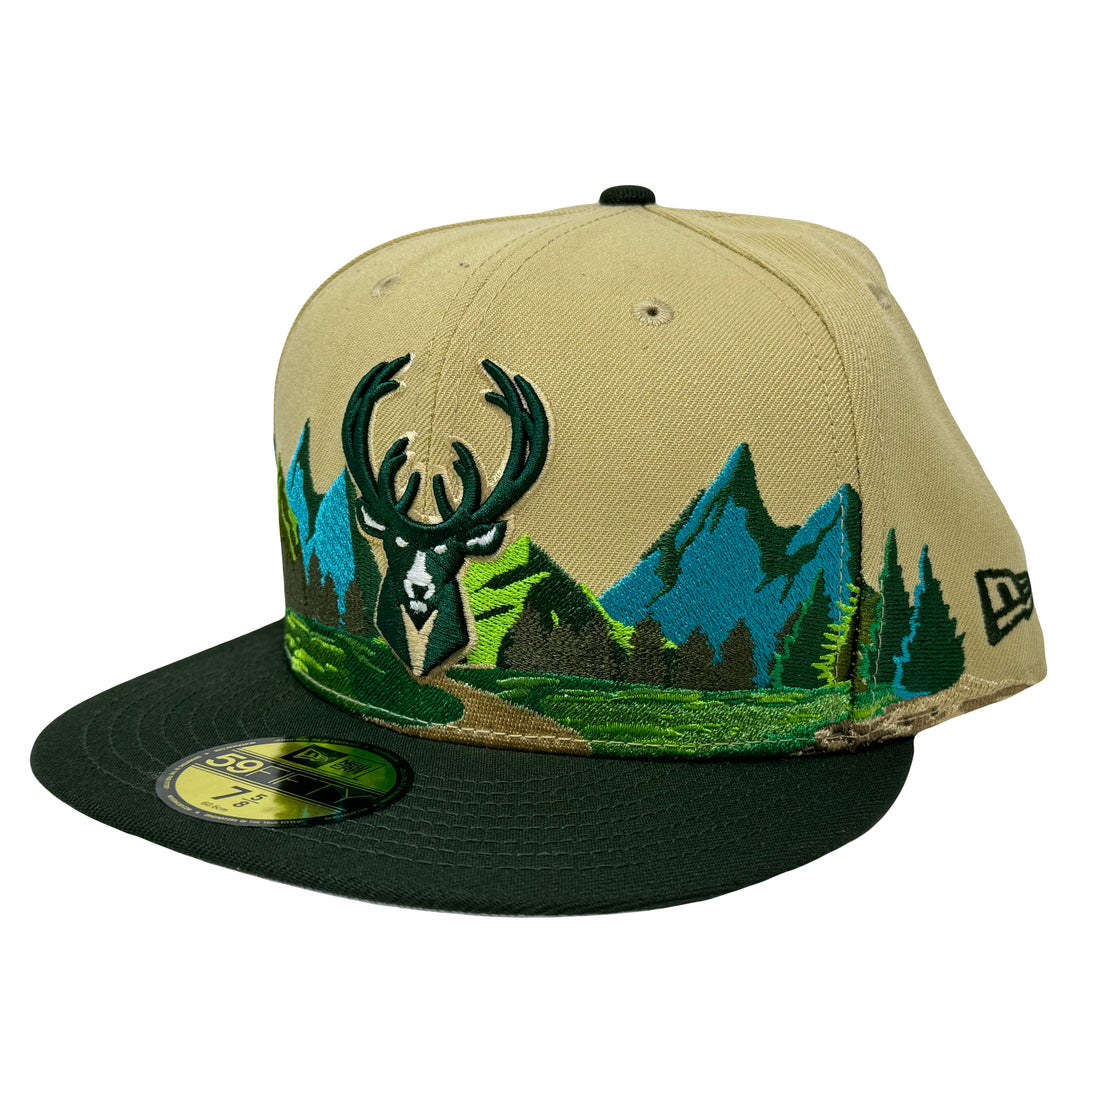 Milwaukee Bucks Mountain Pack 5950 New Era Fitted Hat